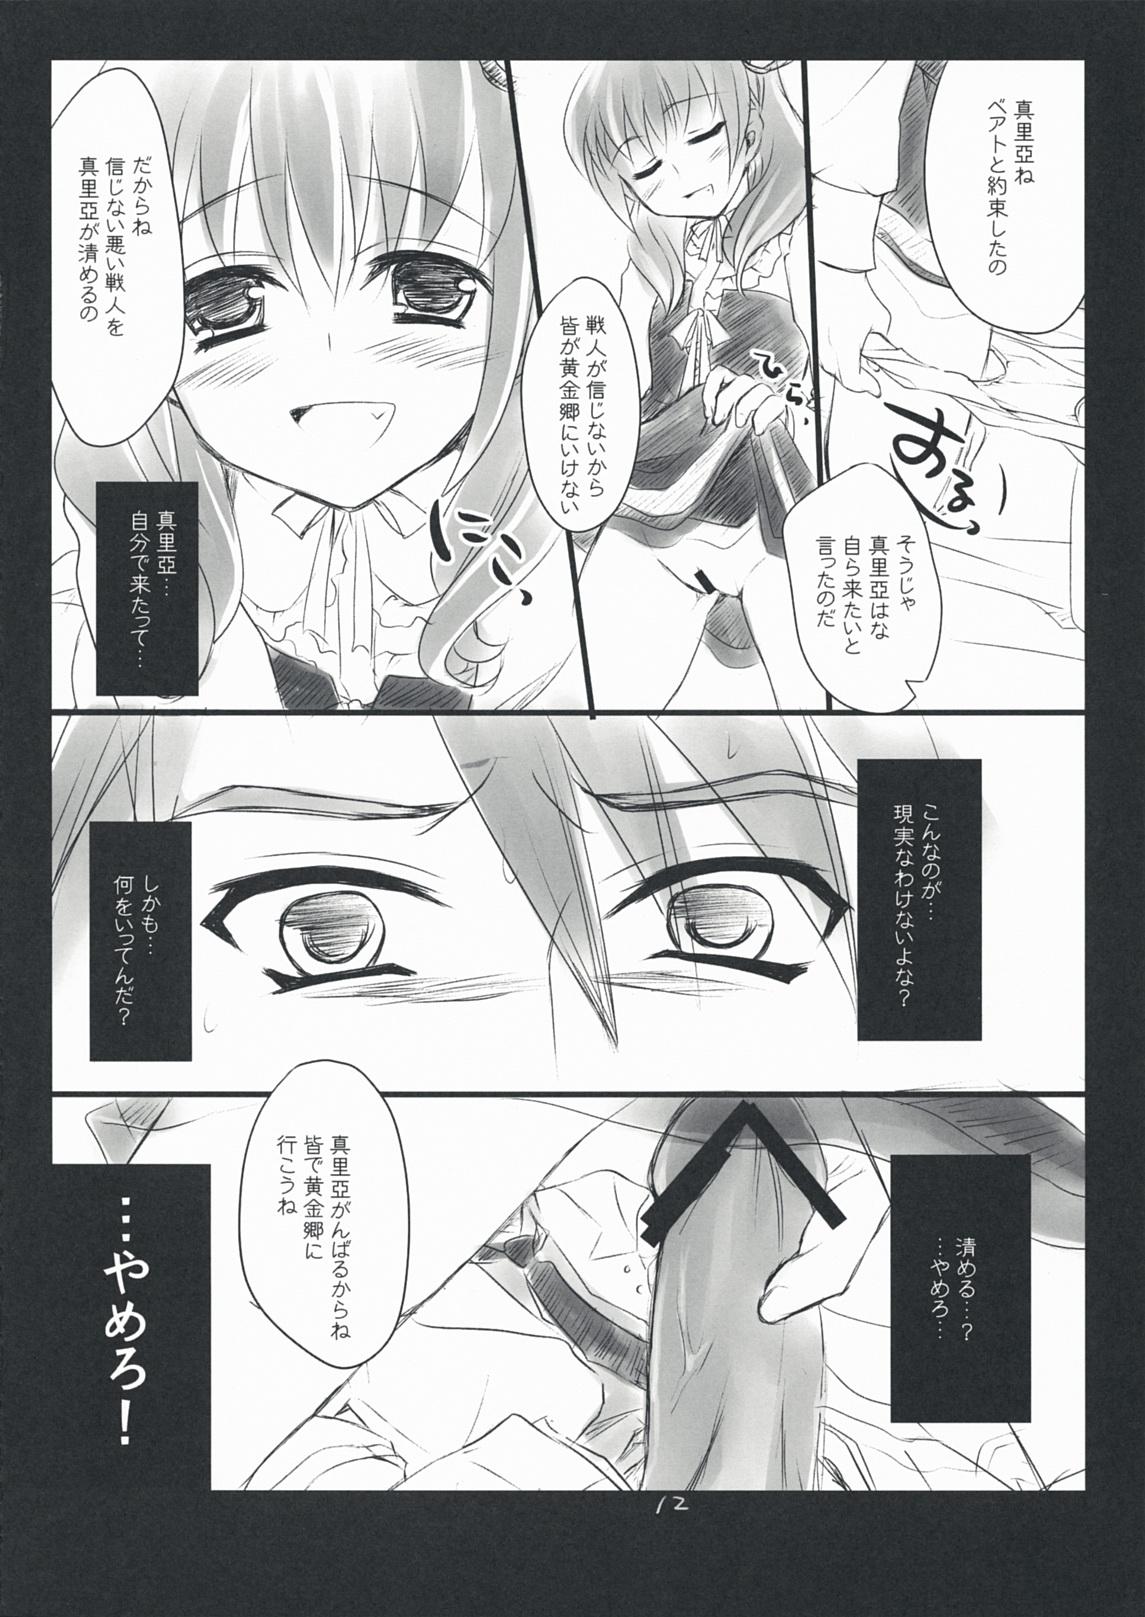 Leche The Queen Of Nightmare - Umineko no naku koro ni Backshots - Page 12